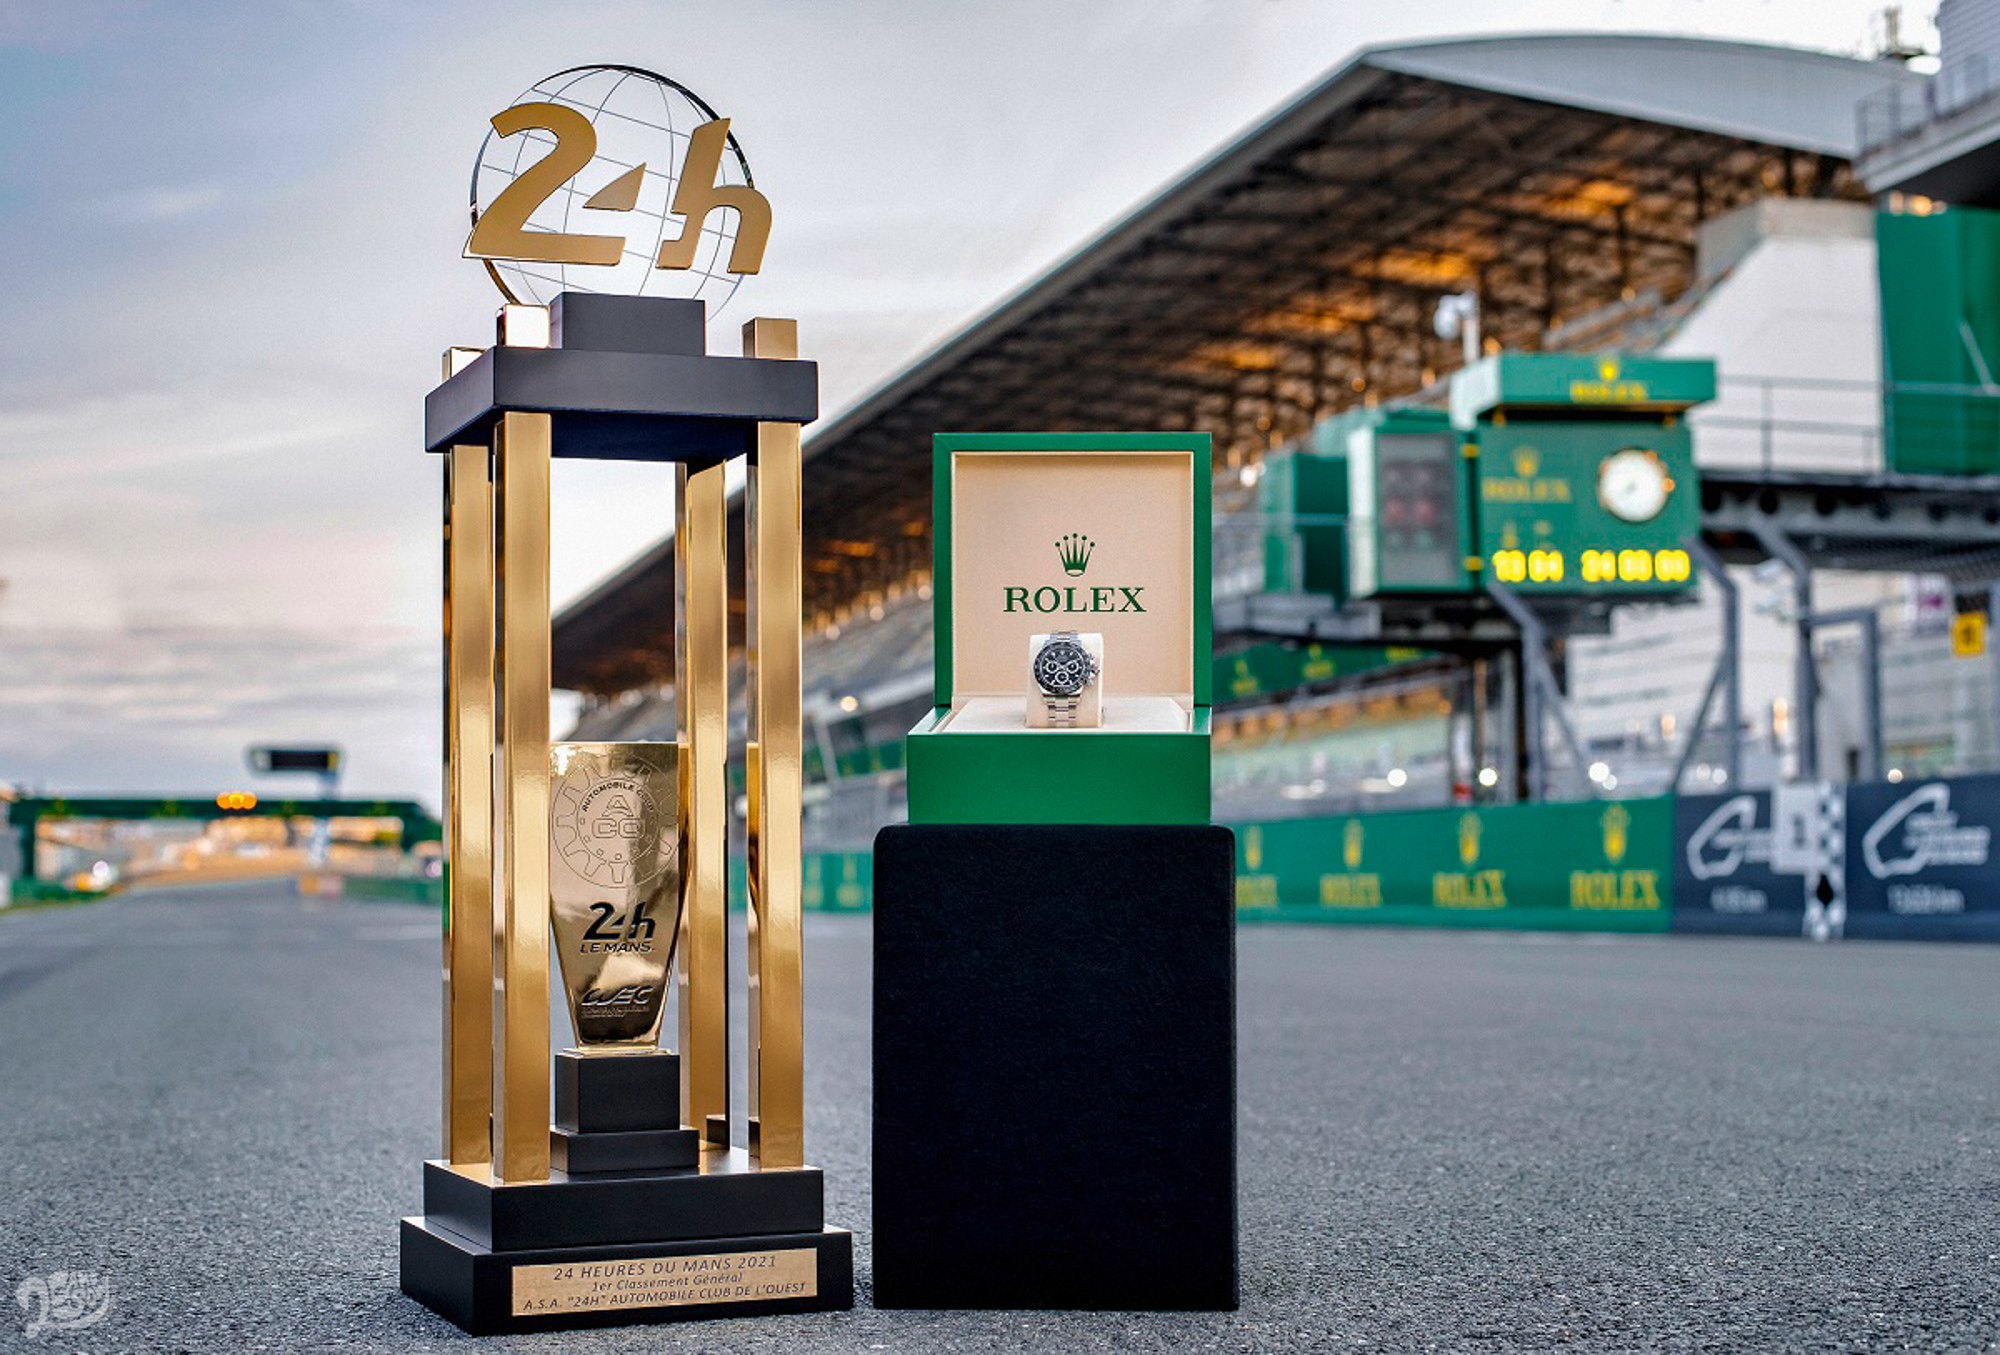 利曼 24 小時耐力賽的獲勝車手將獲頒一枚鐫刻特殊字樣的 Oyster Perpetual Cosmograph Daytona（蠔式恒動宇宙計型迪通拿）腕錶。